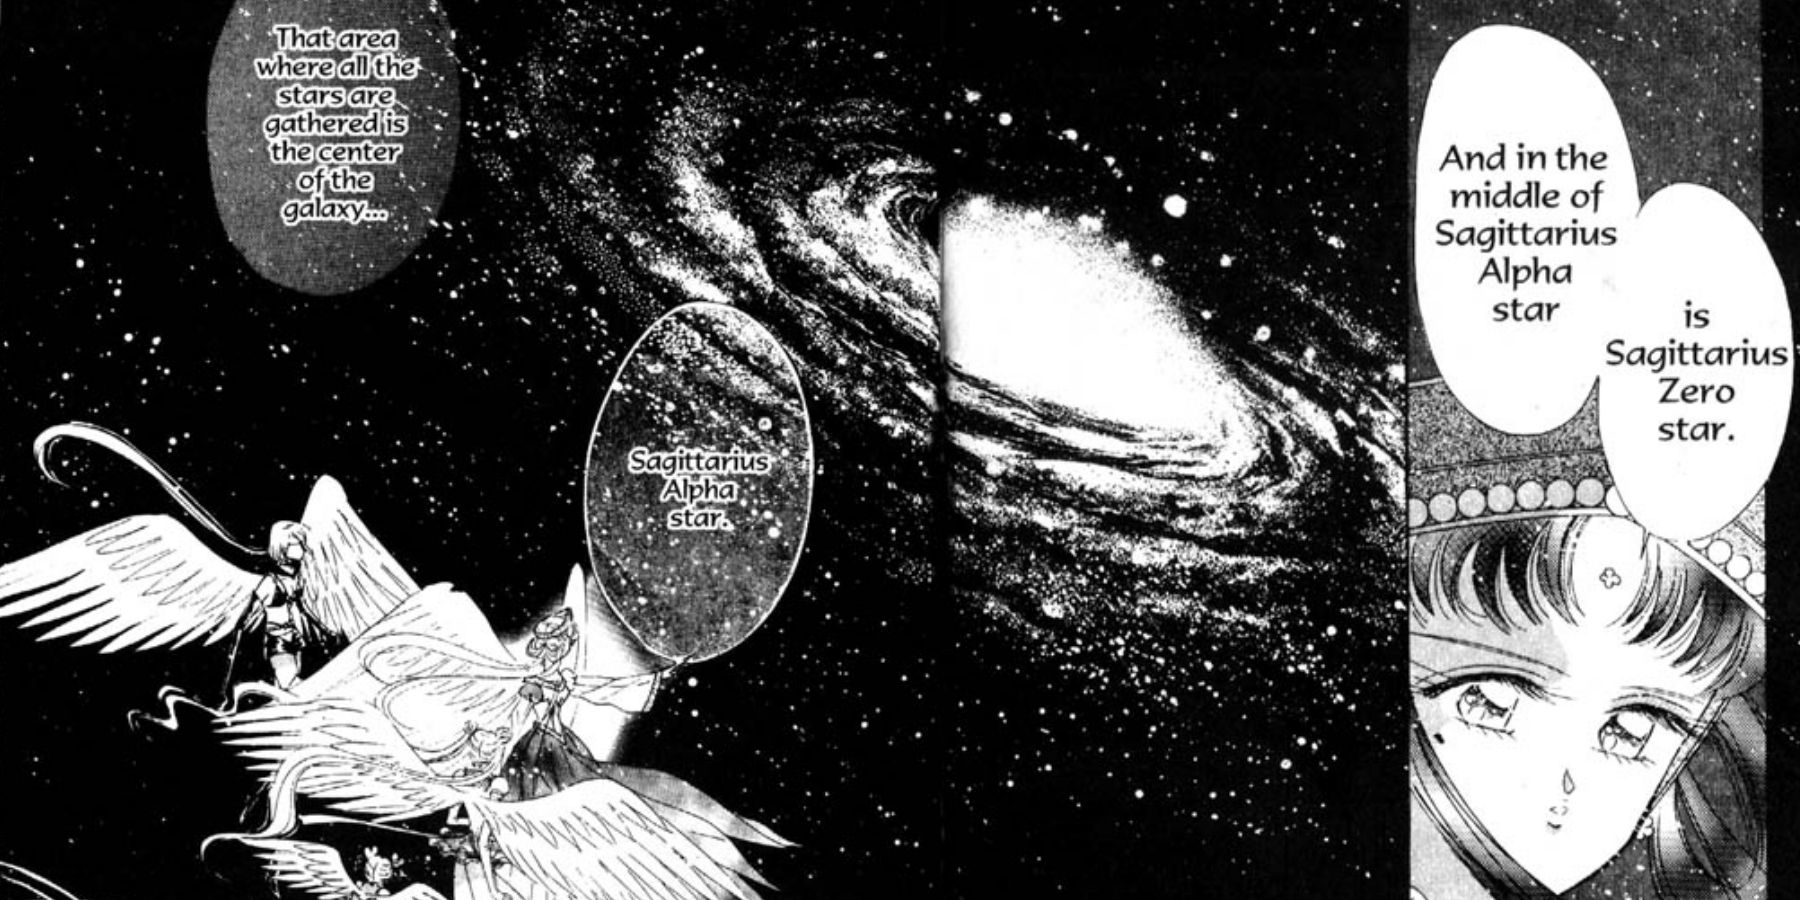 Sagittarius Zero Star In Sailor Moon Manga